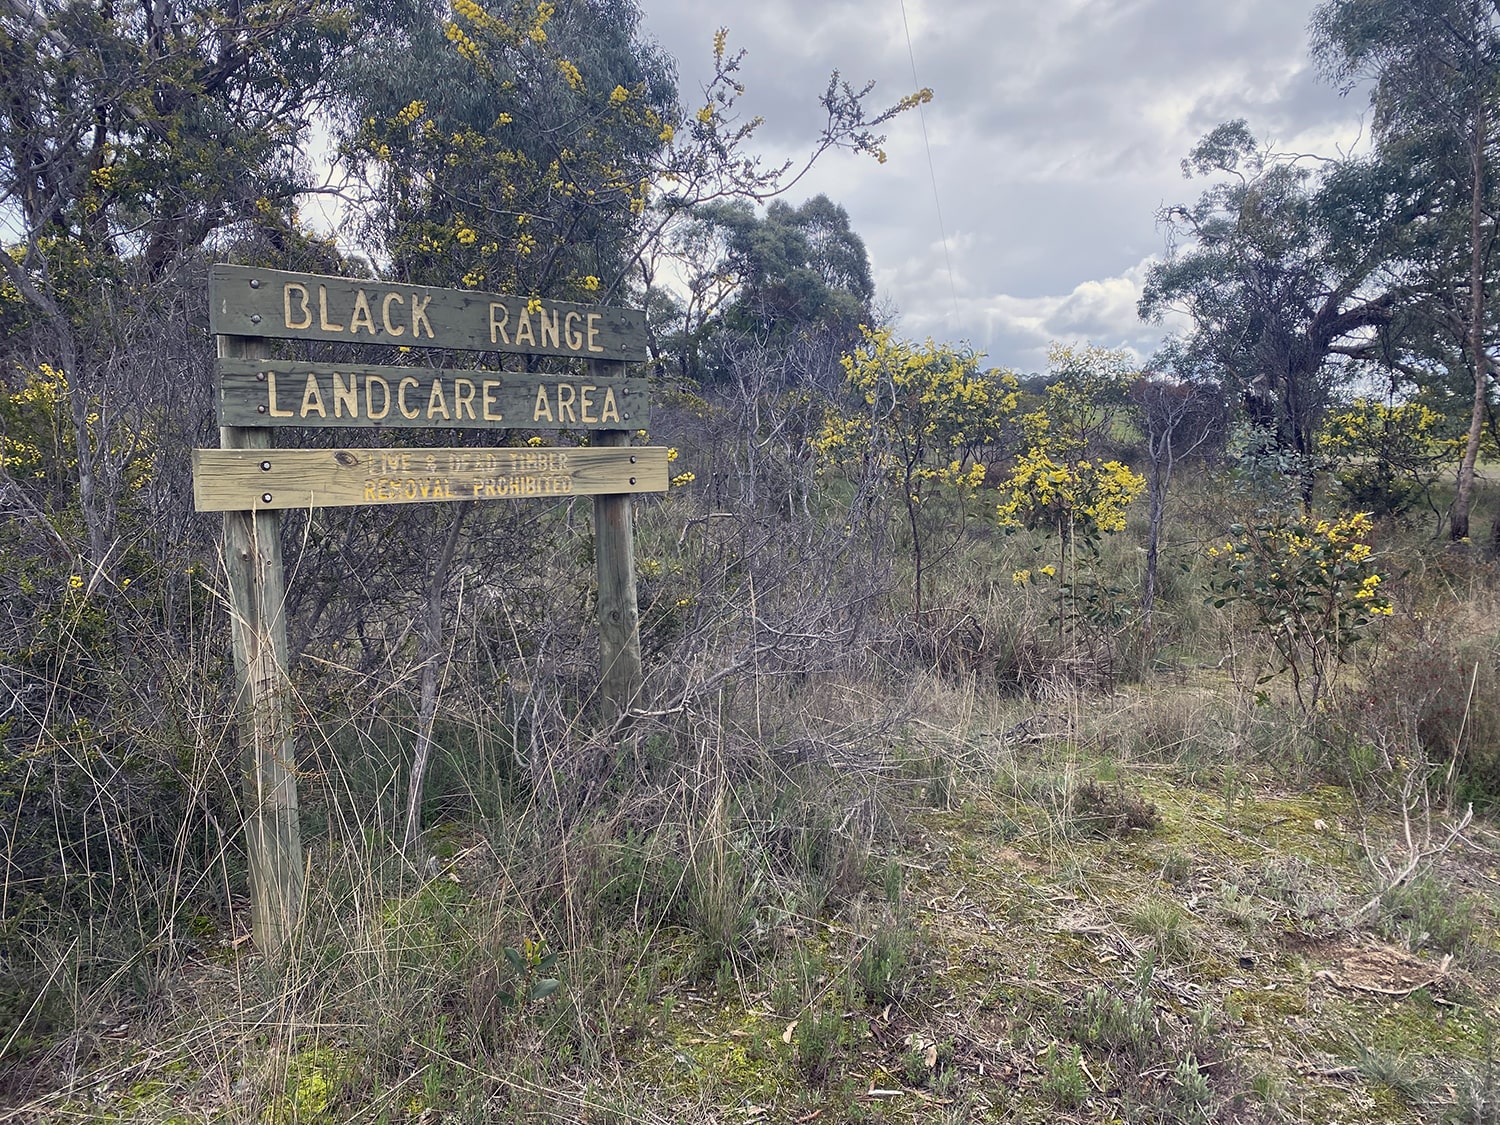 Black Range Landcare area sign